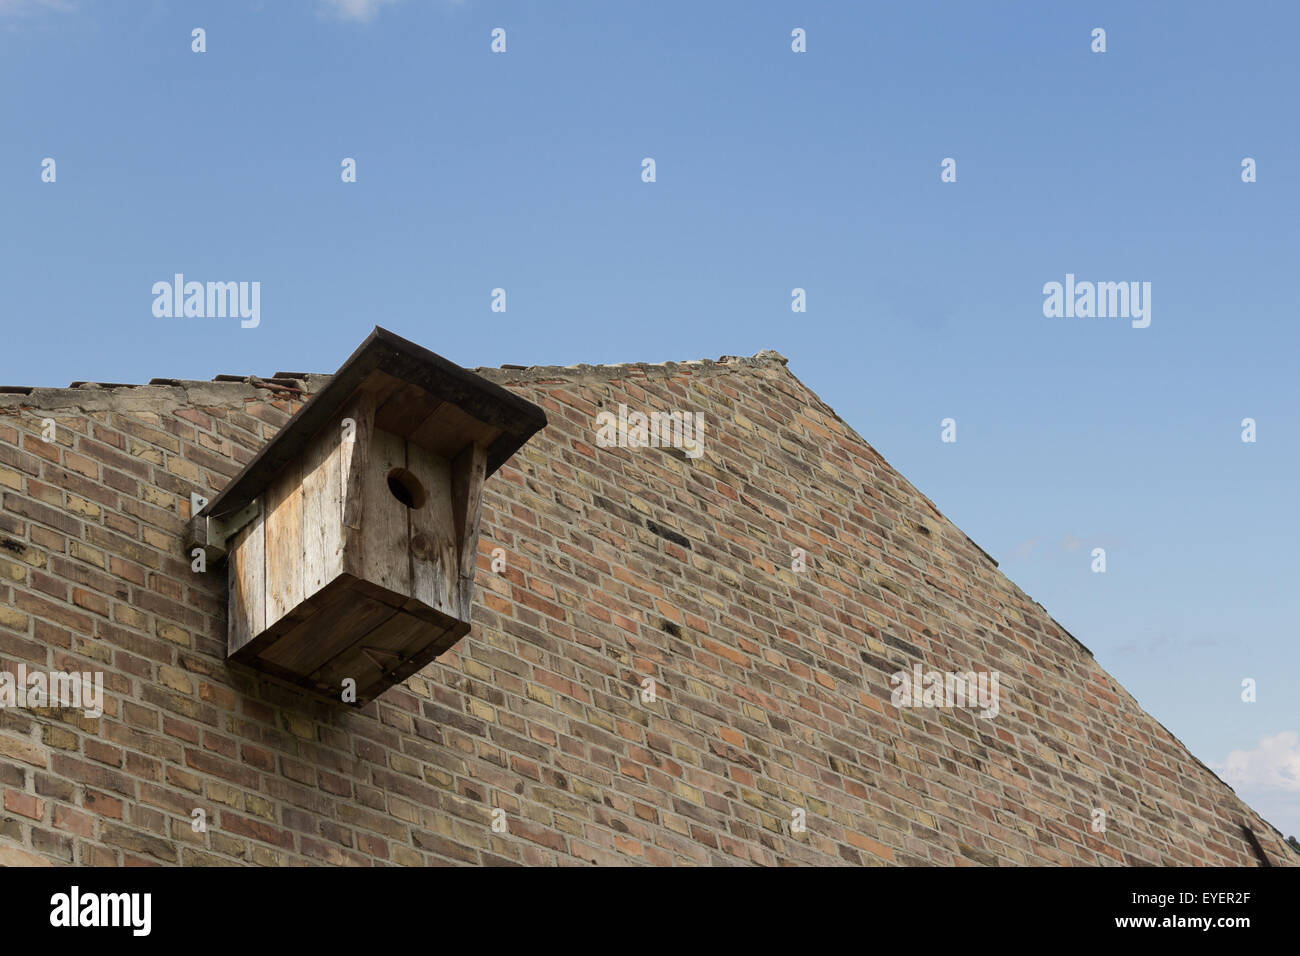 wooden birdhouse on building facade / bird house Stock Photo